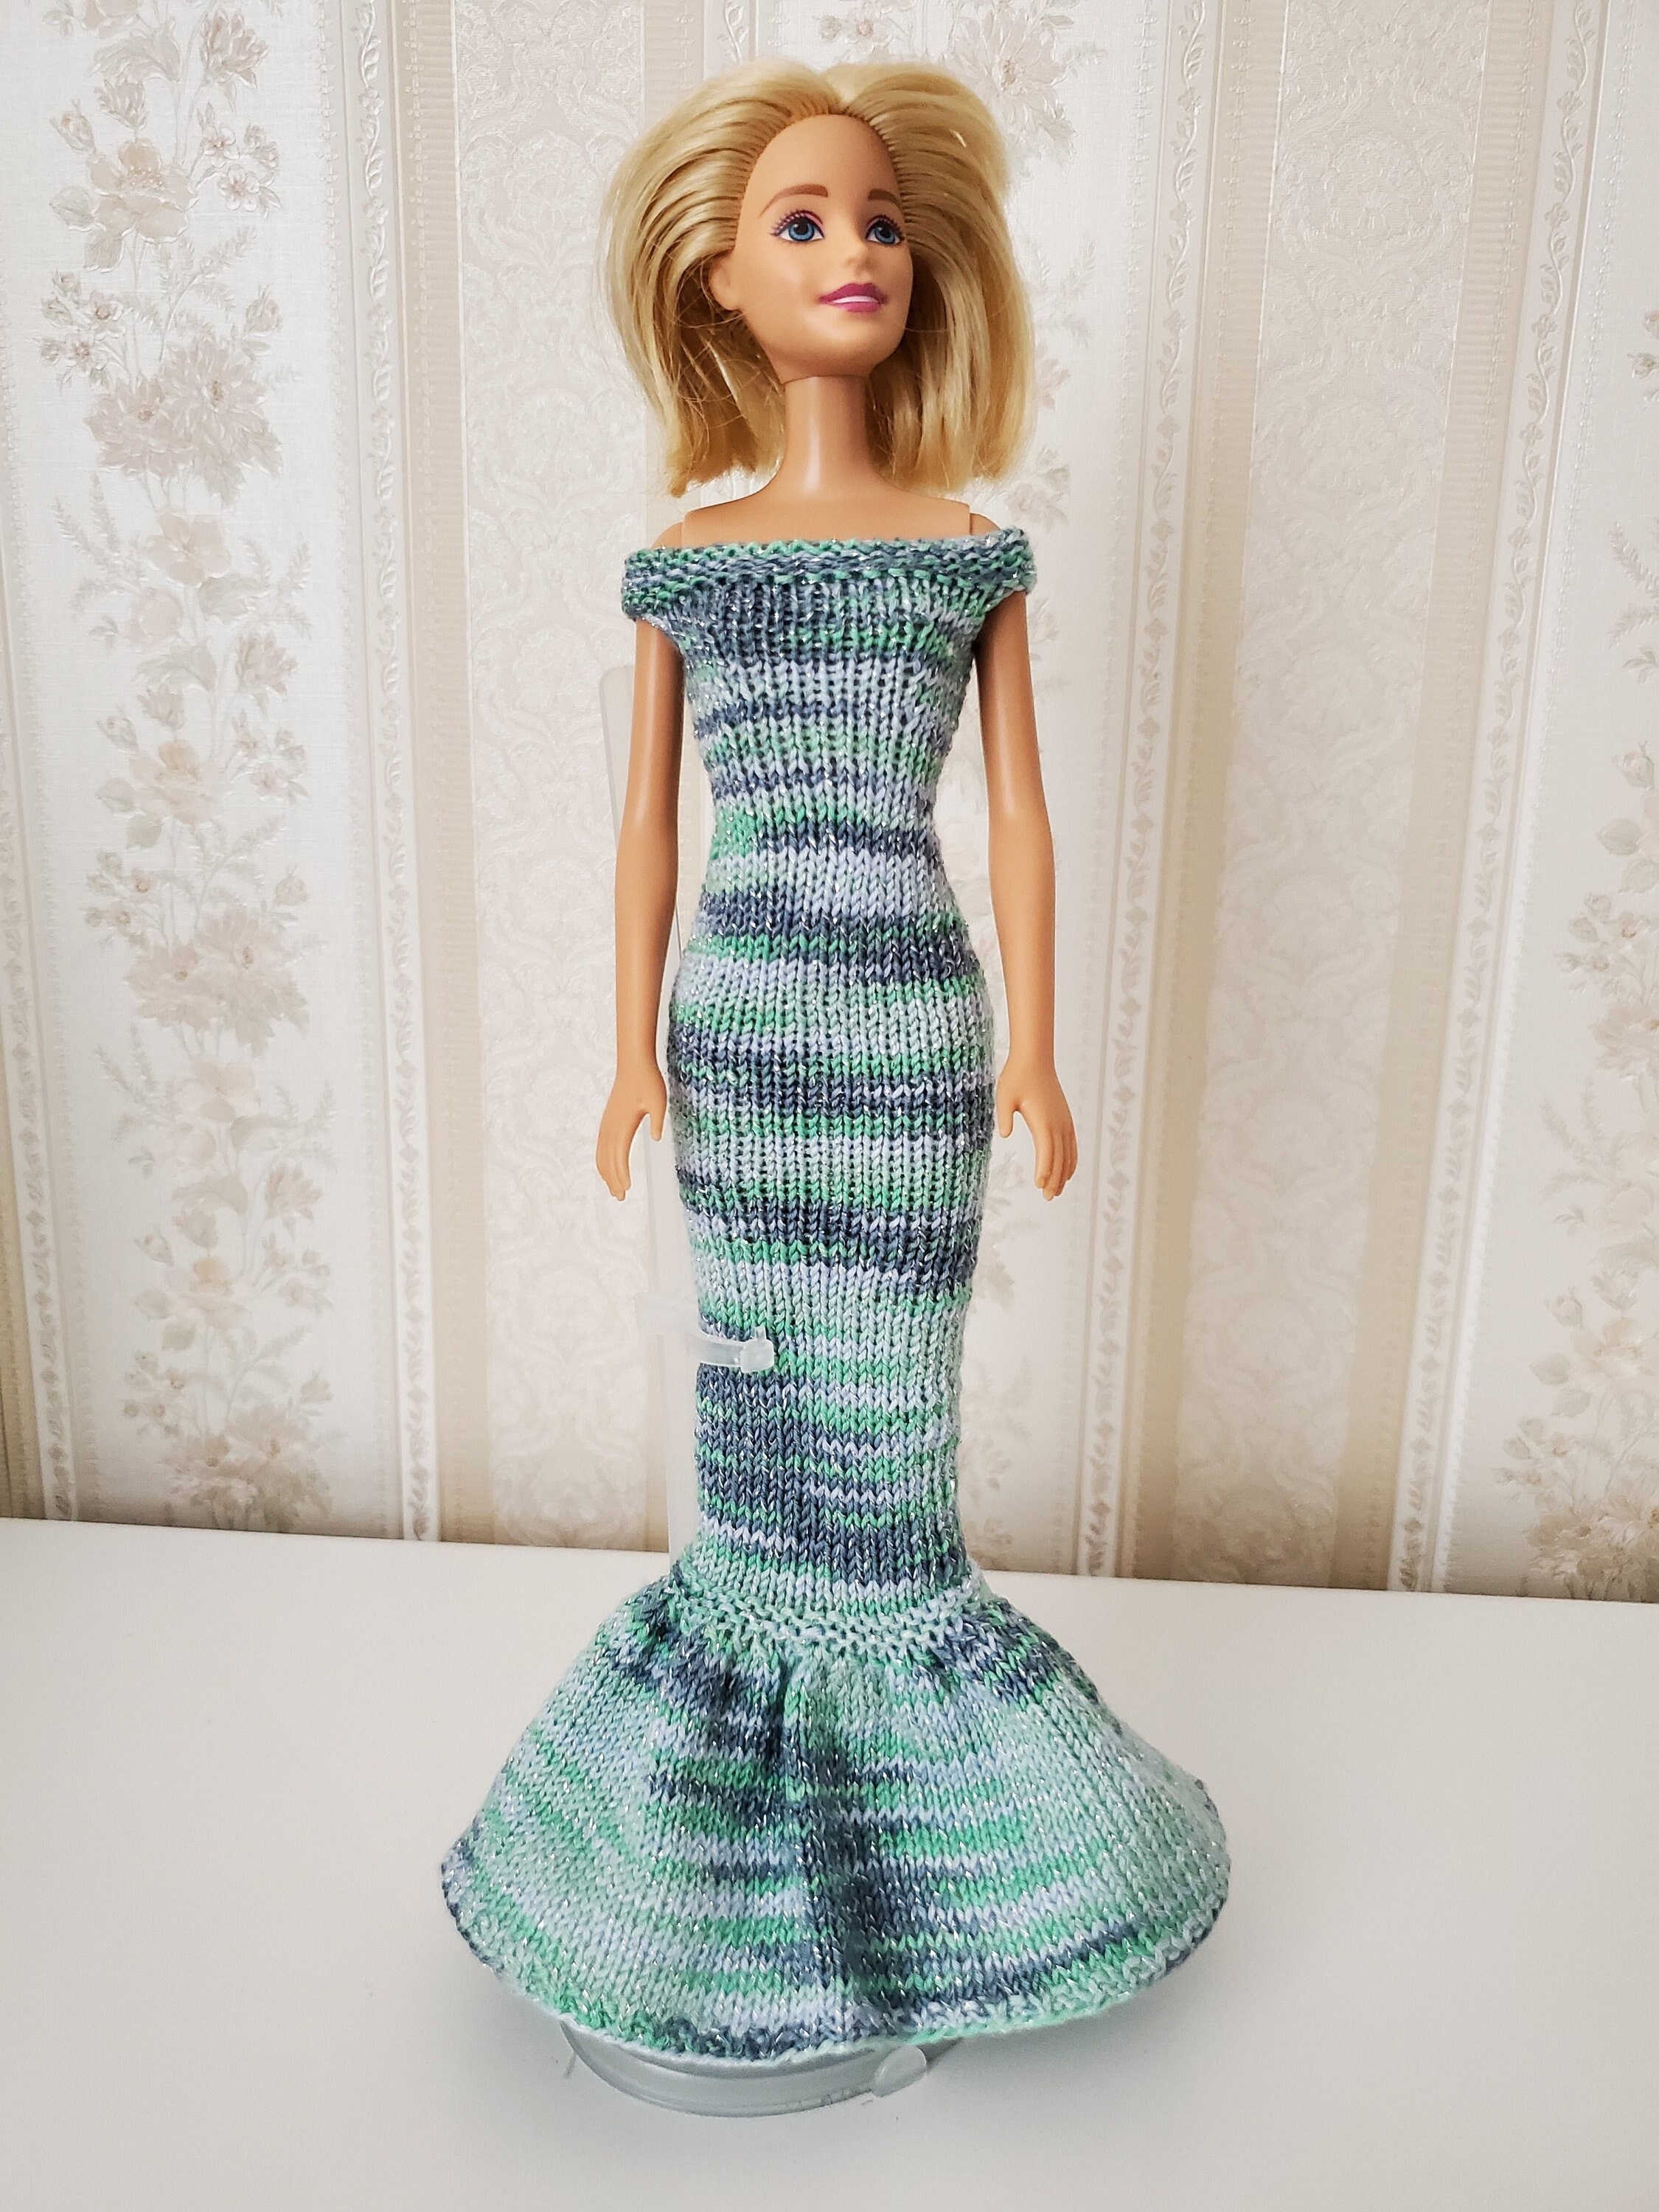 Foulard for Sale avec l'œuvre « Barbie Raiponce enchanteresse